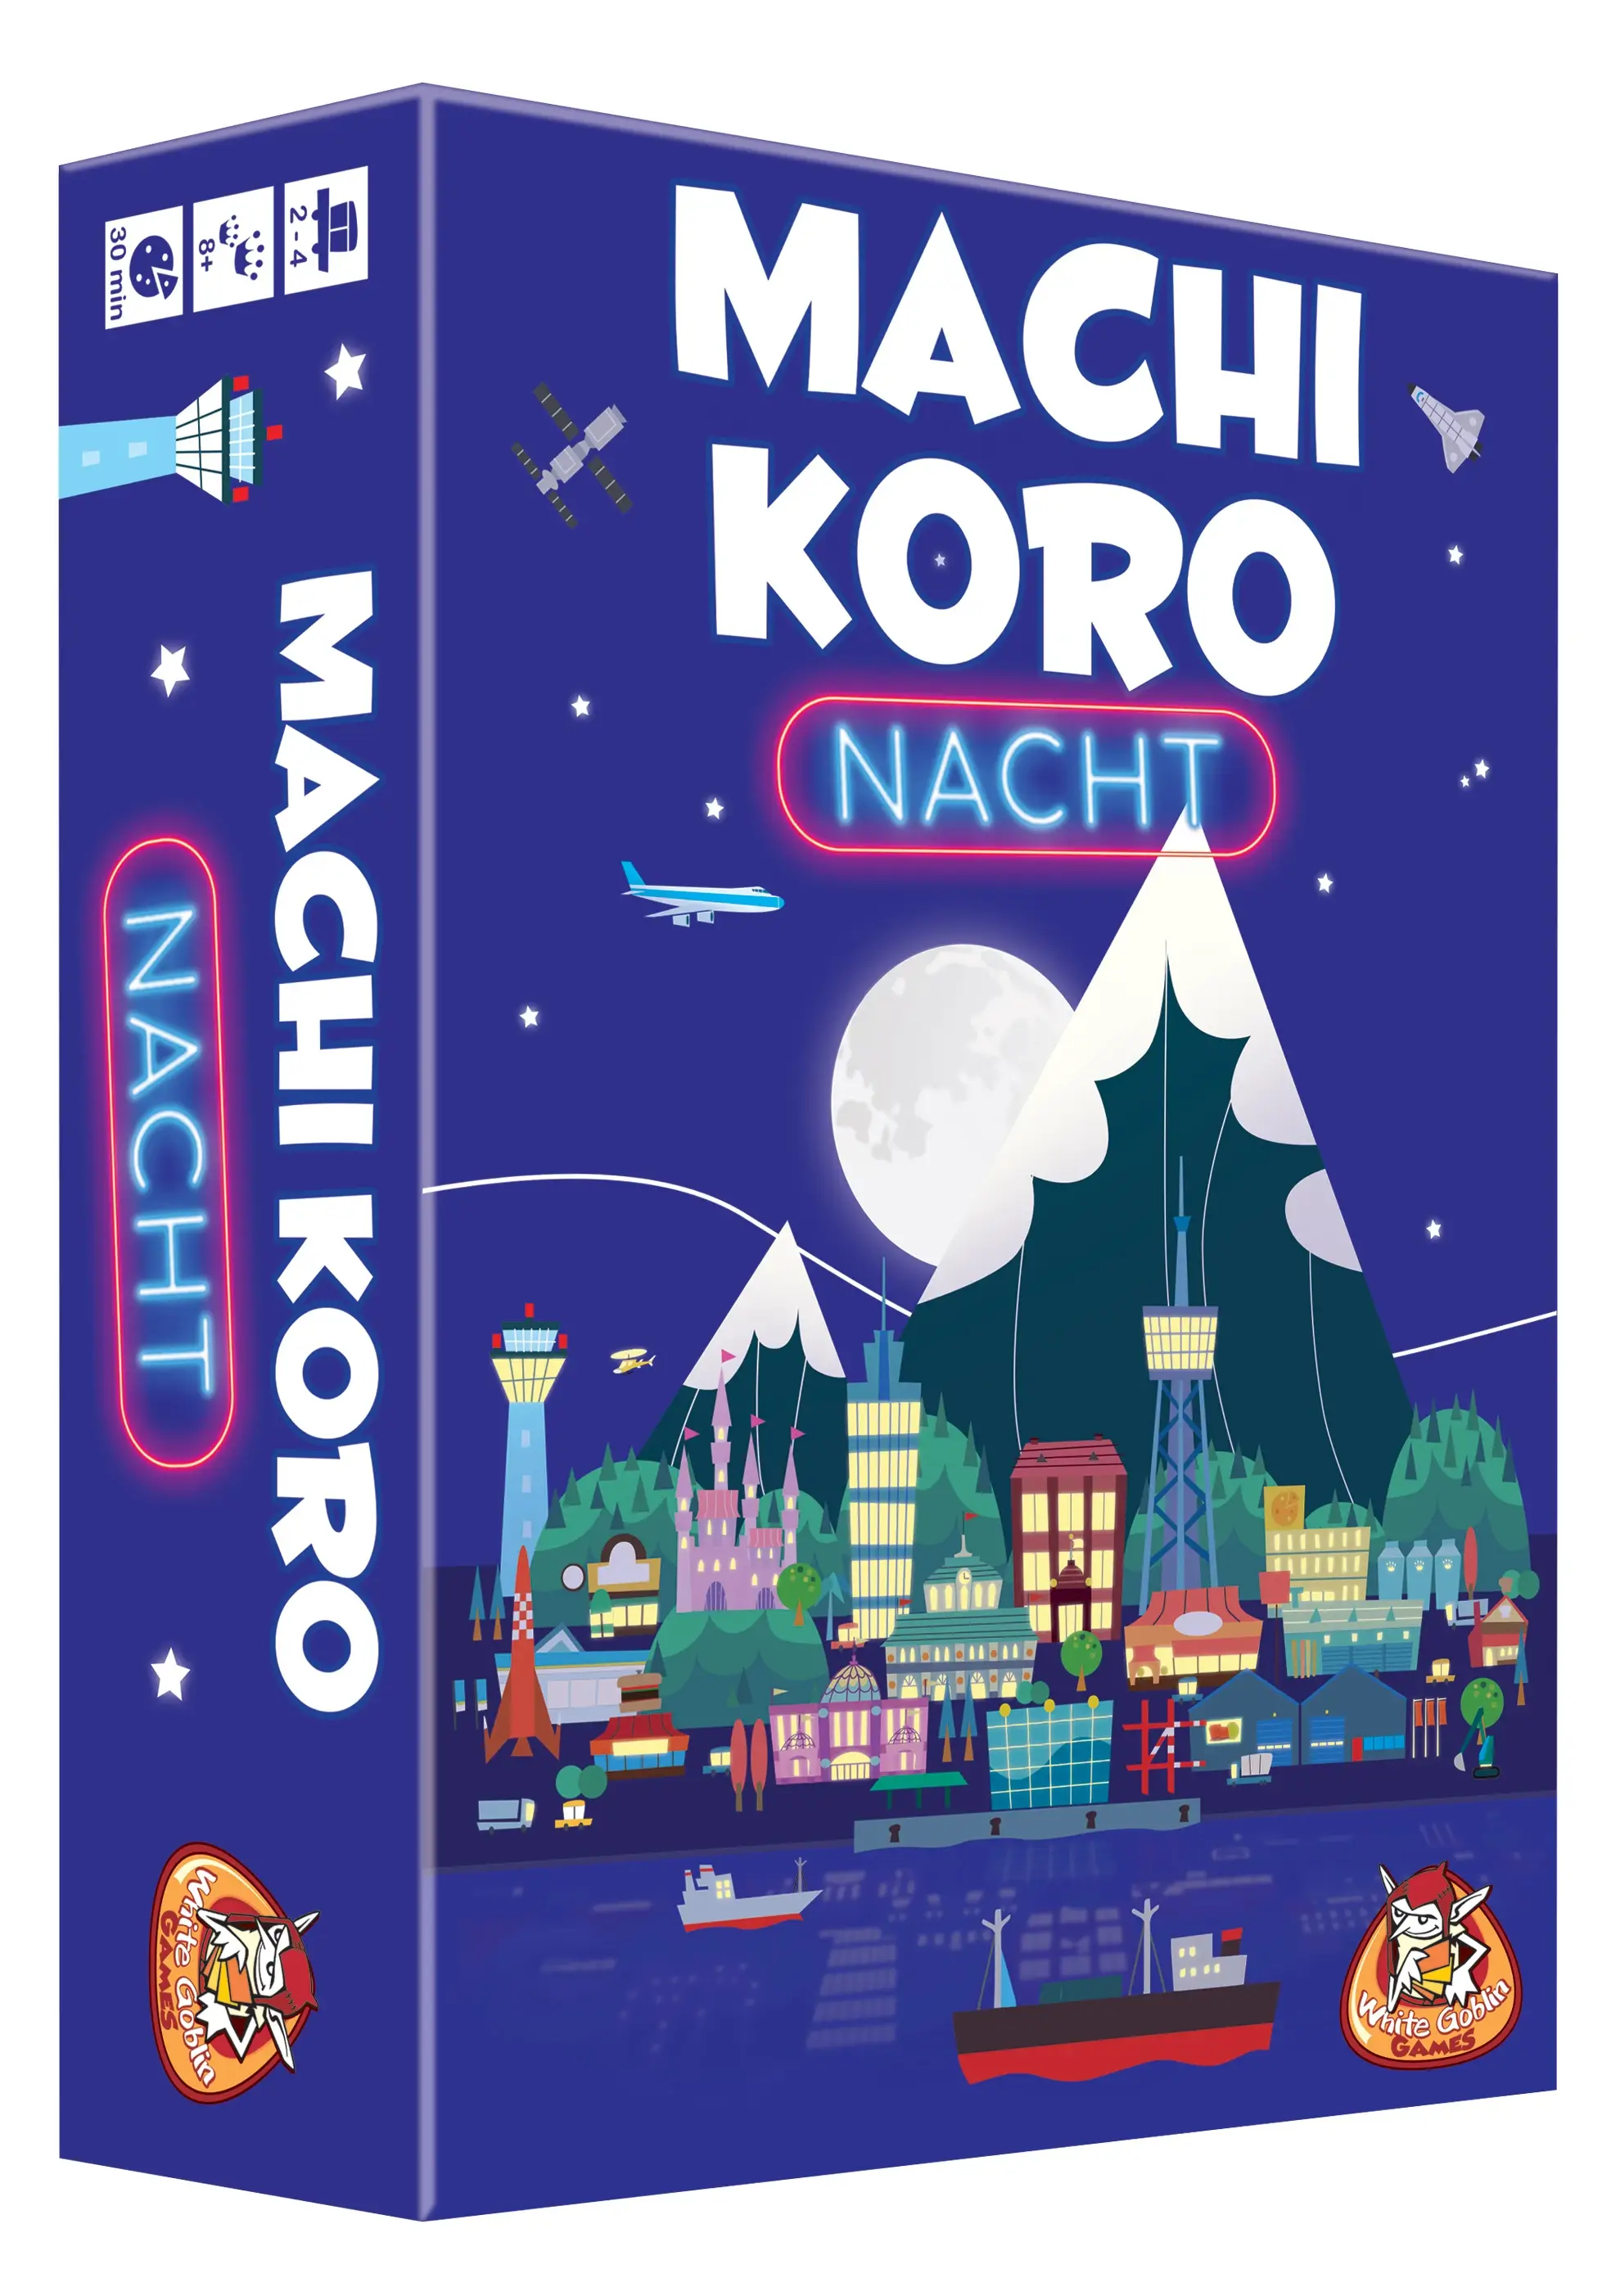 Getalenteerd ergens bij betrokken zijn binnenkomst Machi Koro Nacht - Dobbelspellen | Paaprika - Spellenwinkel & Café